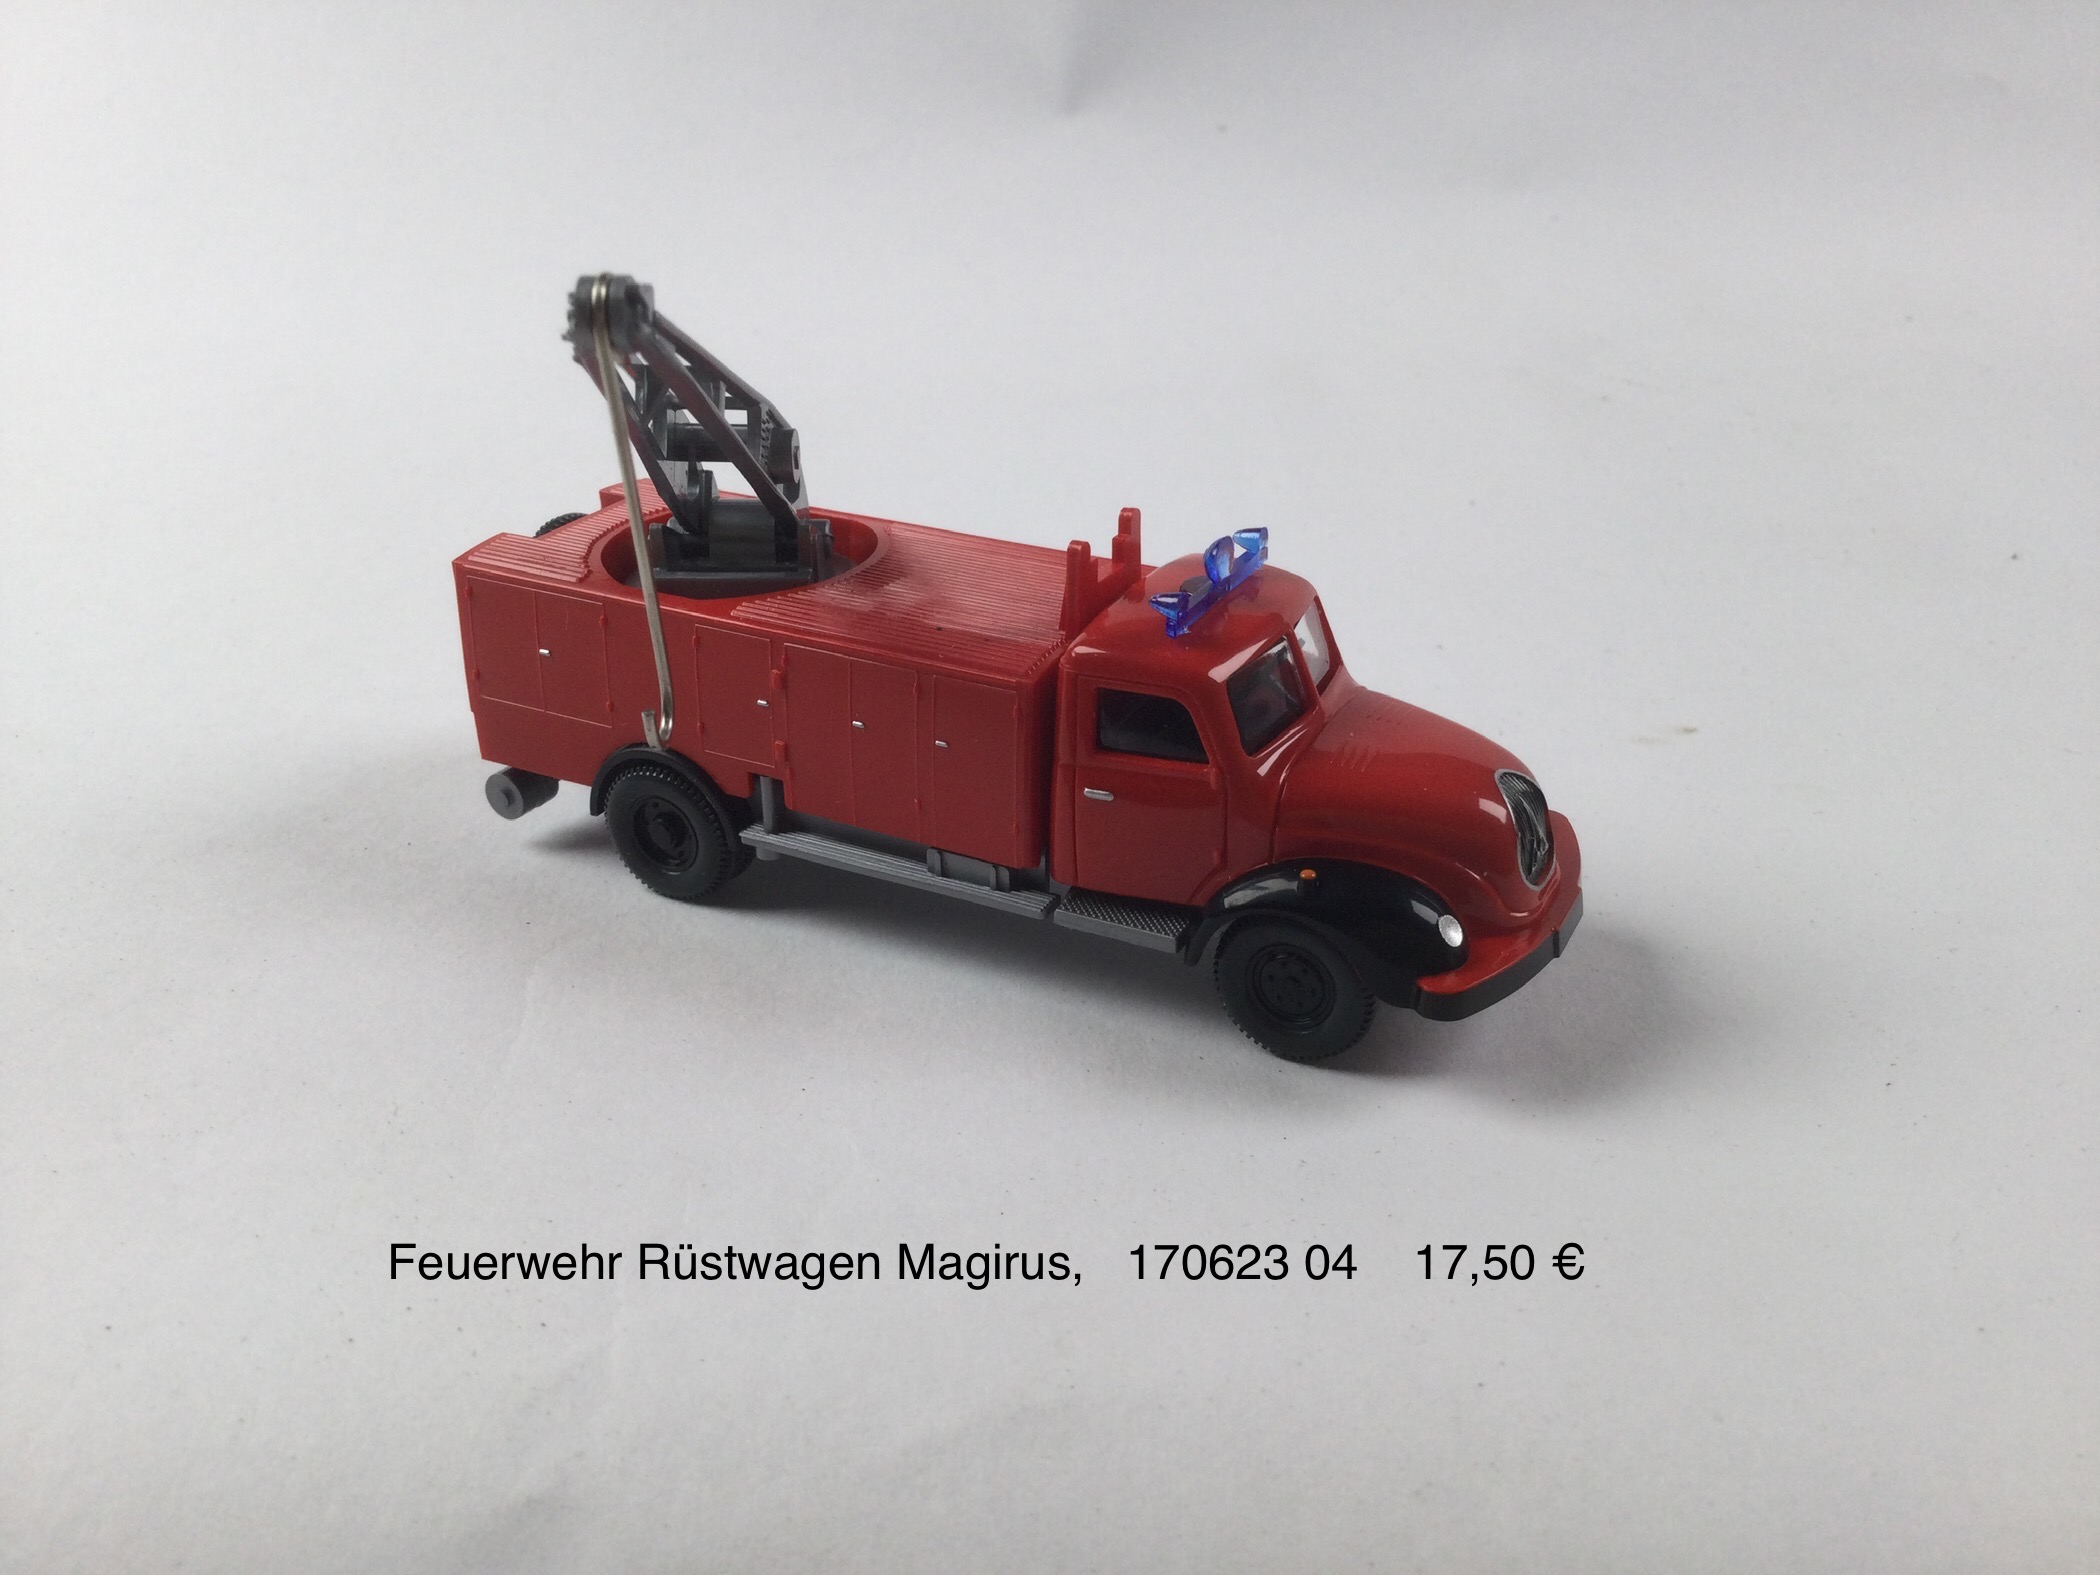 Feuerwehr Rüstwagen Magirus